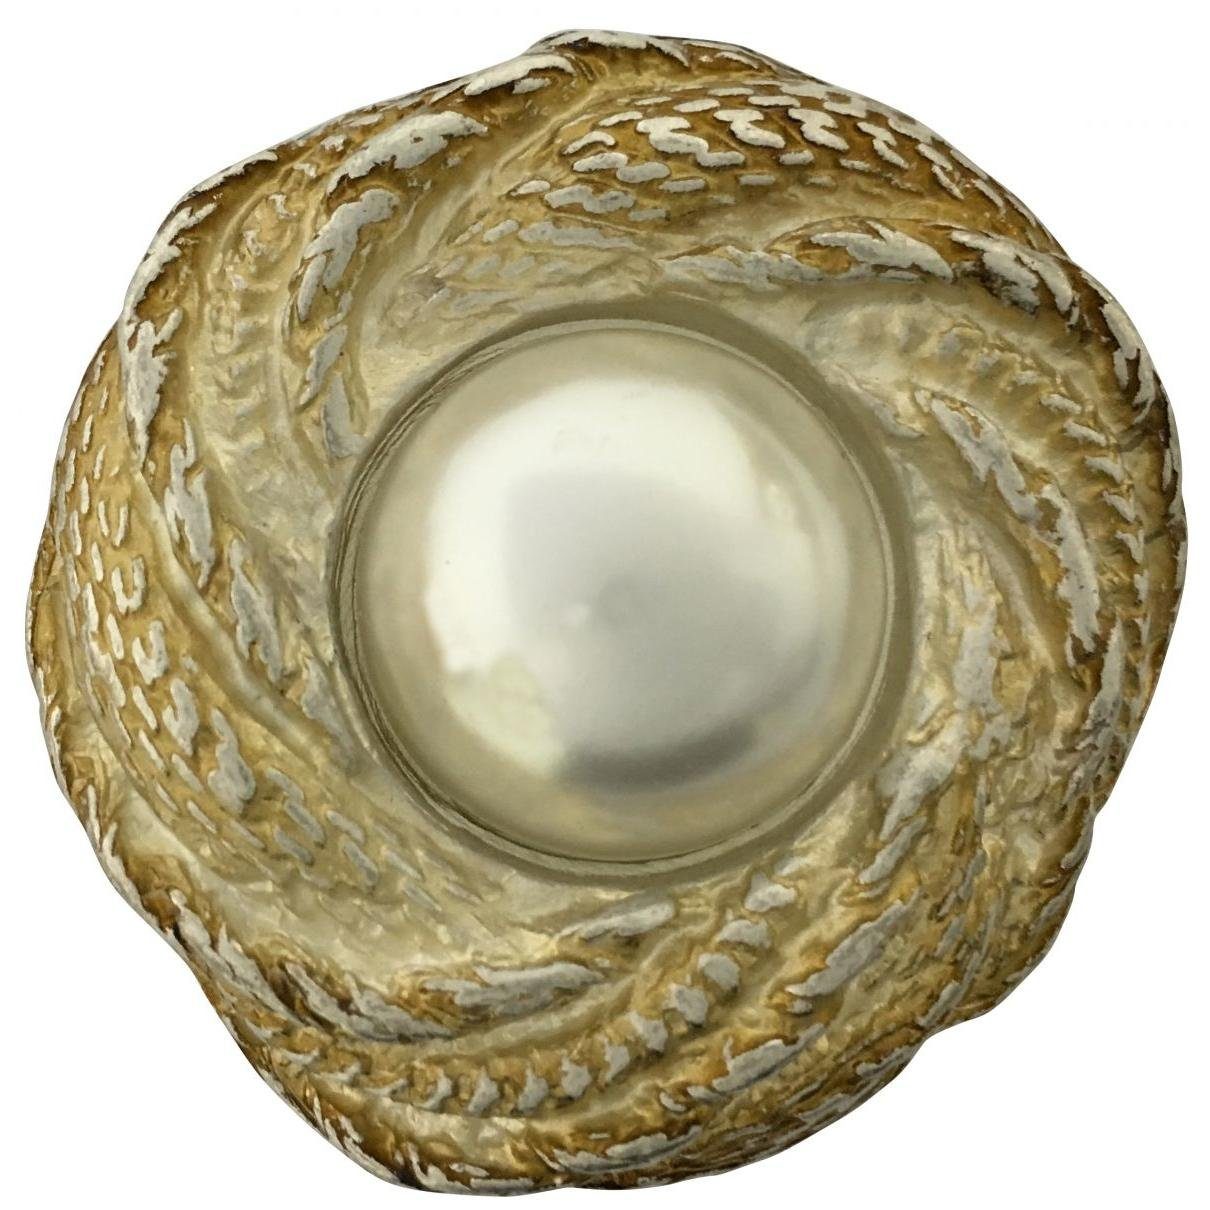 BELTINGER Gürtelschnalle Round Stone 4,0 cm - Buckle Gürtelschließe 40mm - Mit hochwertigem Str Oro vecchio, mit Steinen